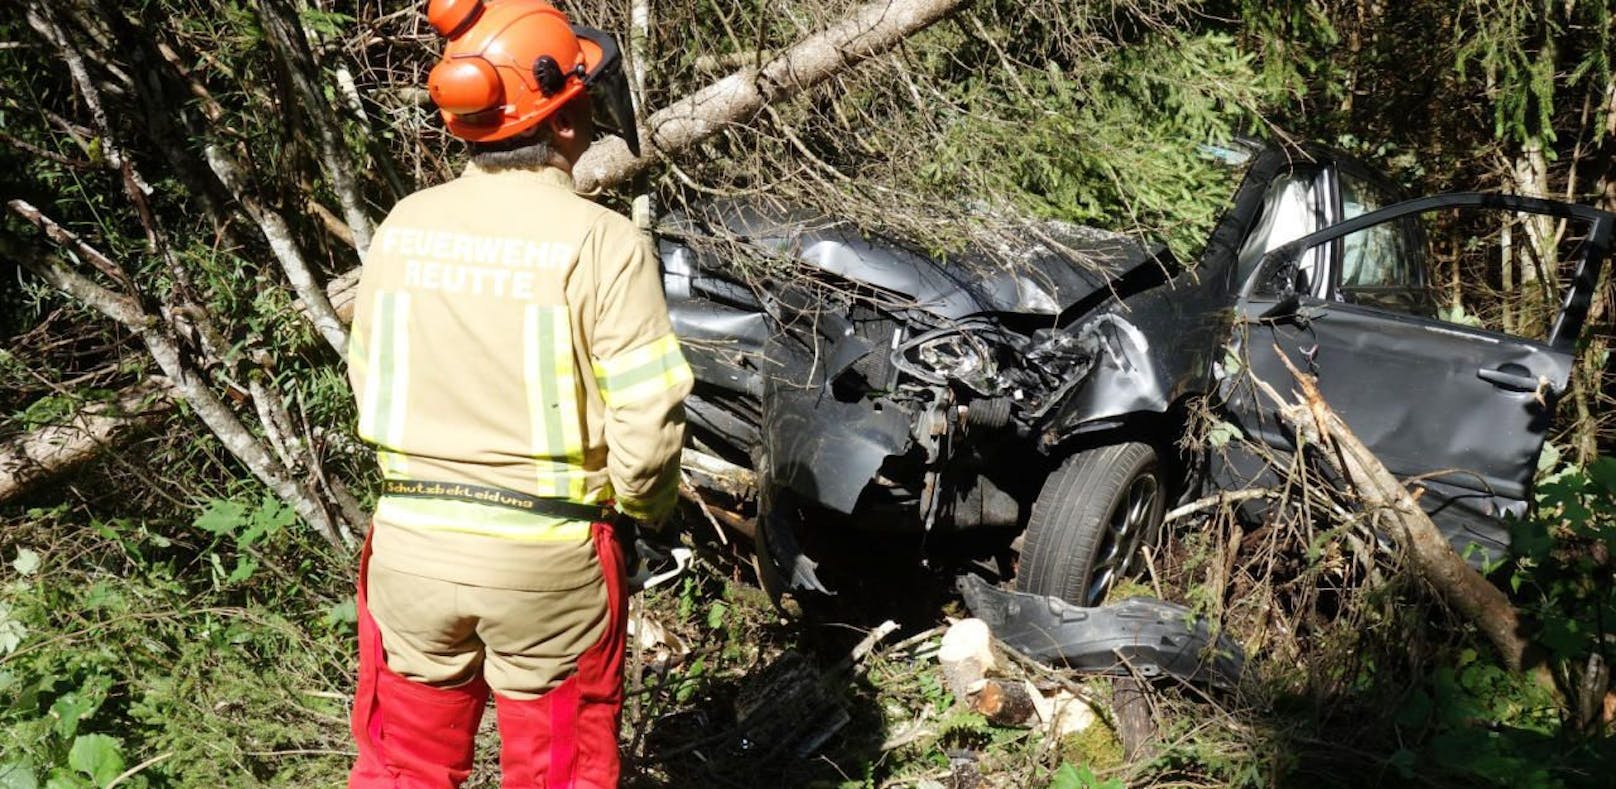 Das Fahrzeug wurde bei dem Crash komplett zerstört.